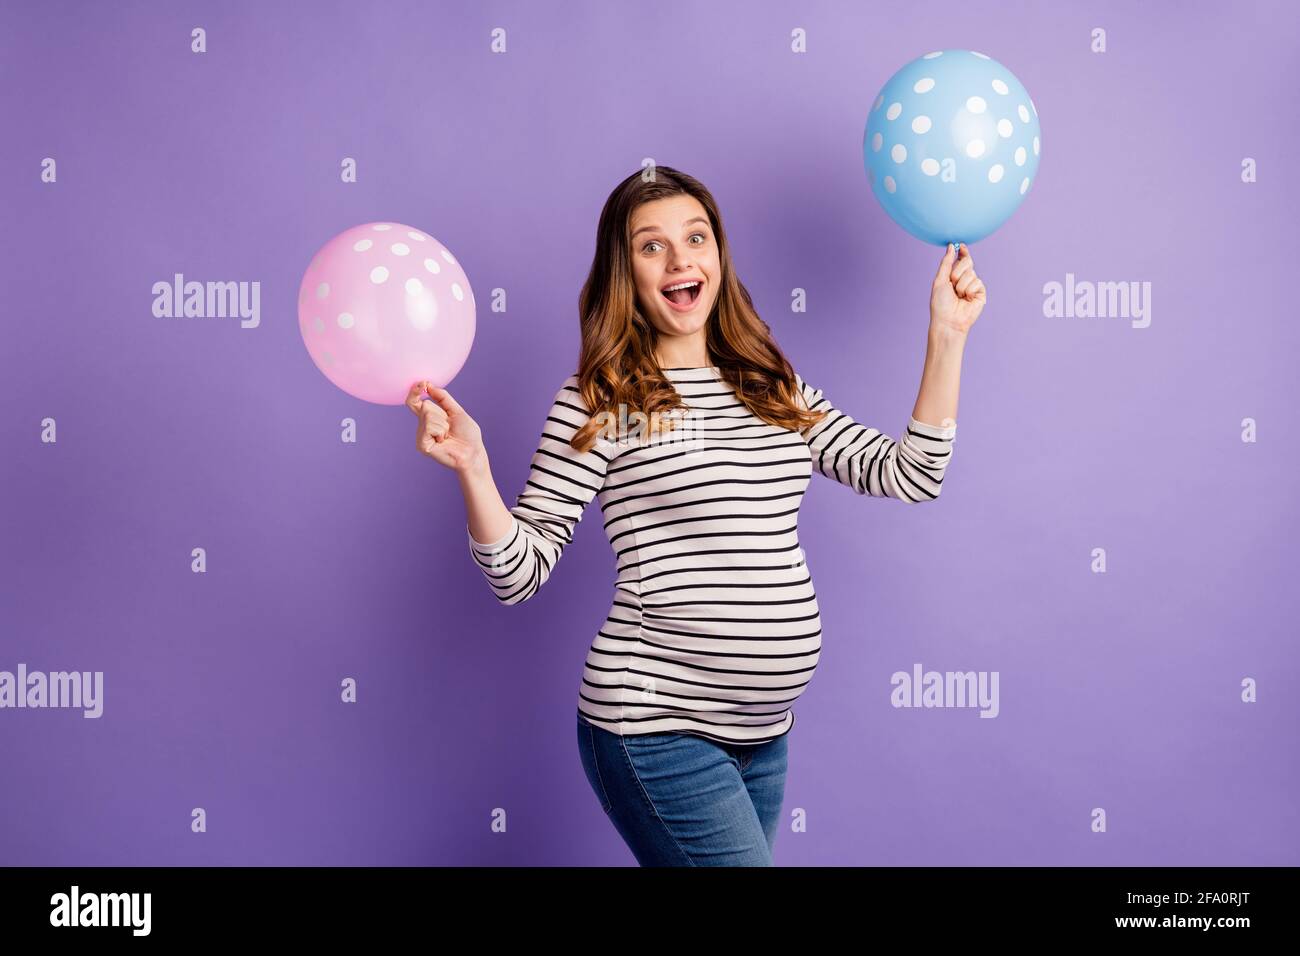 Ballon Bauch Stockfotos und -bilder Kaufen - Alamy